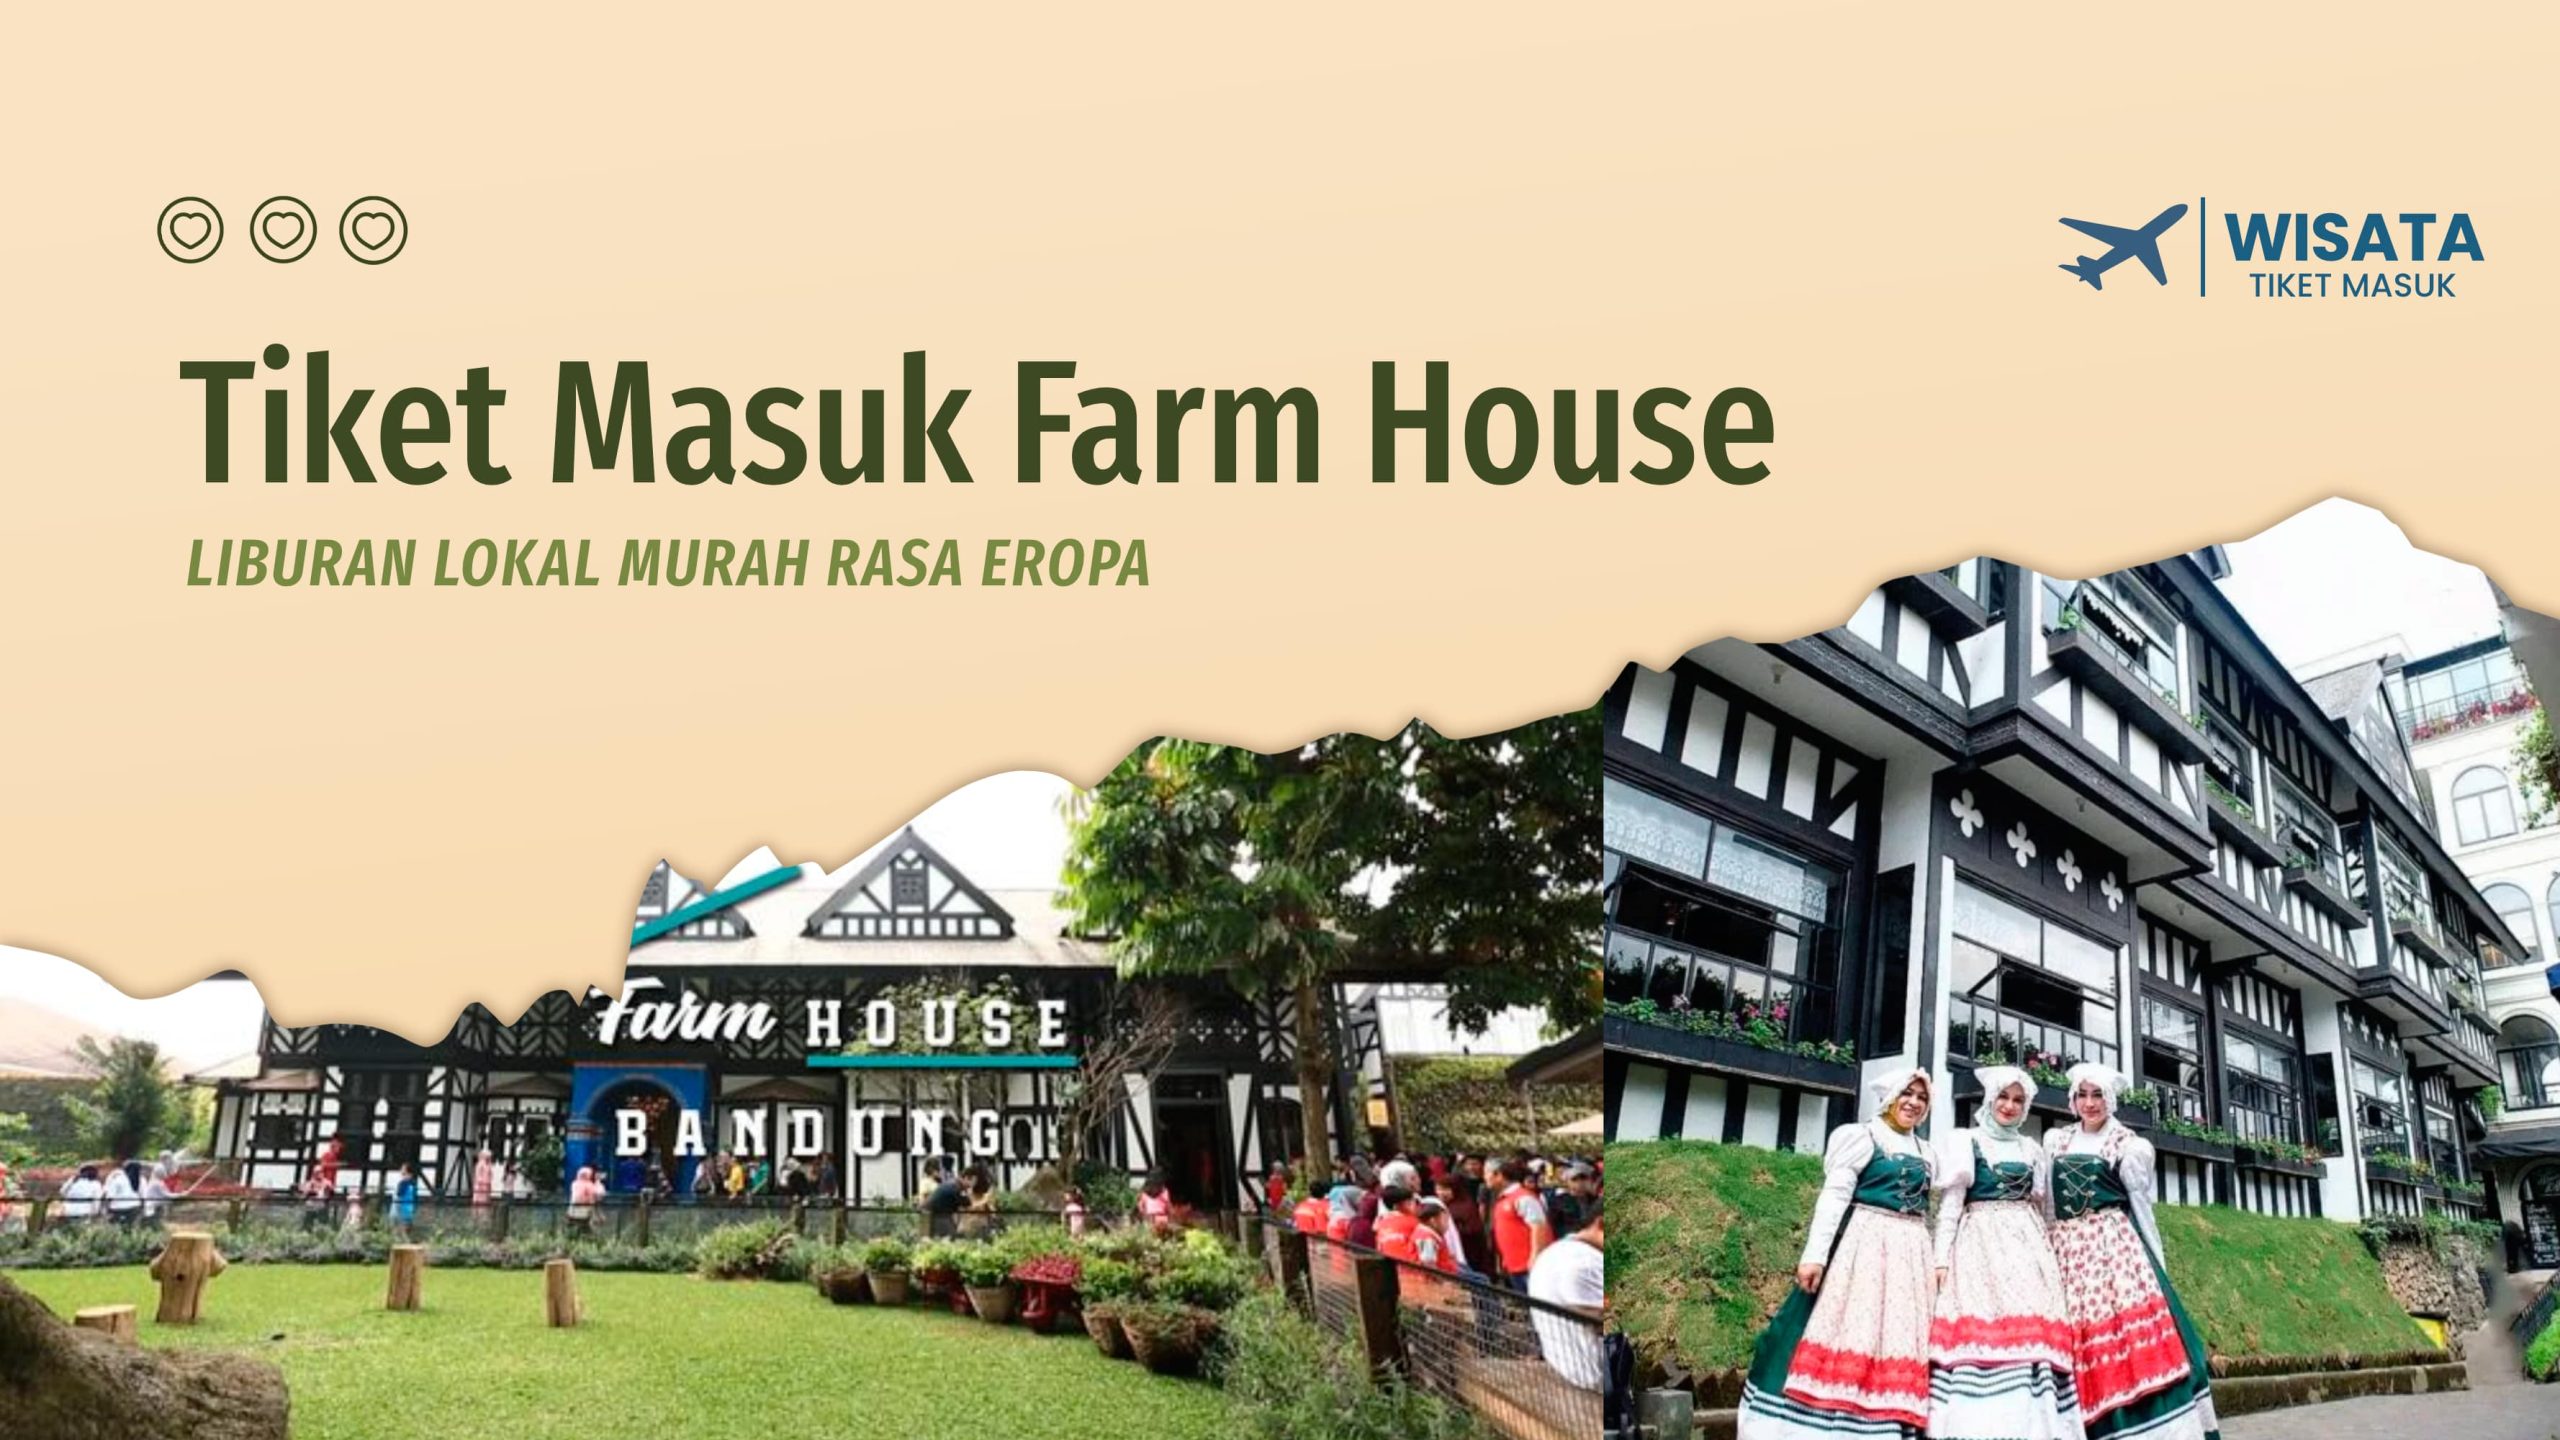 Tiket Masuk Farm House